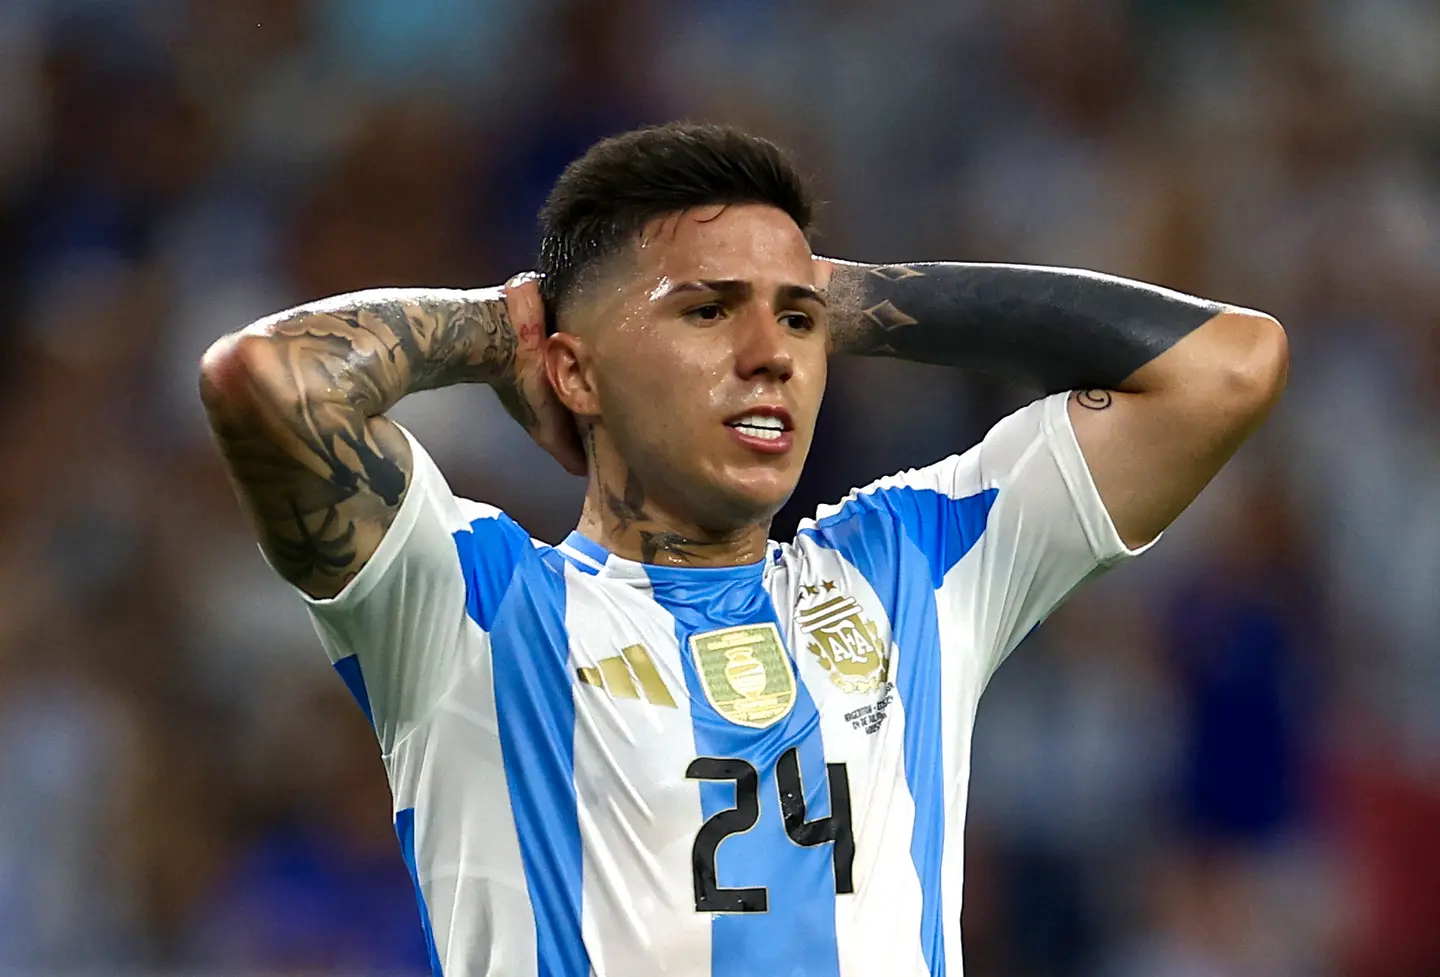 Copa América-kaoset fortsetter: Argentinsk idrettsleder sparket etter Messi-kritikk